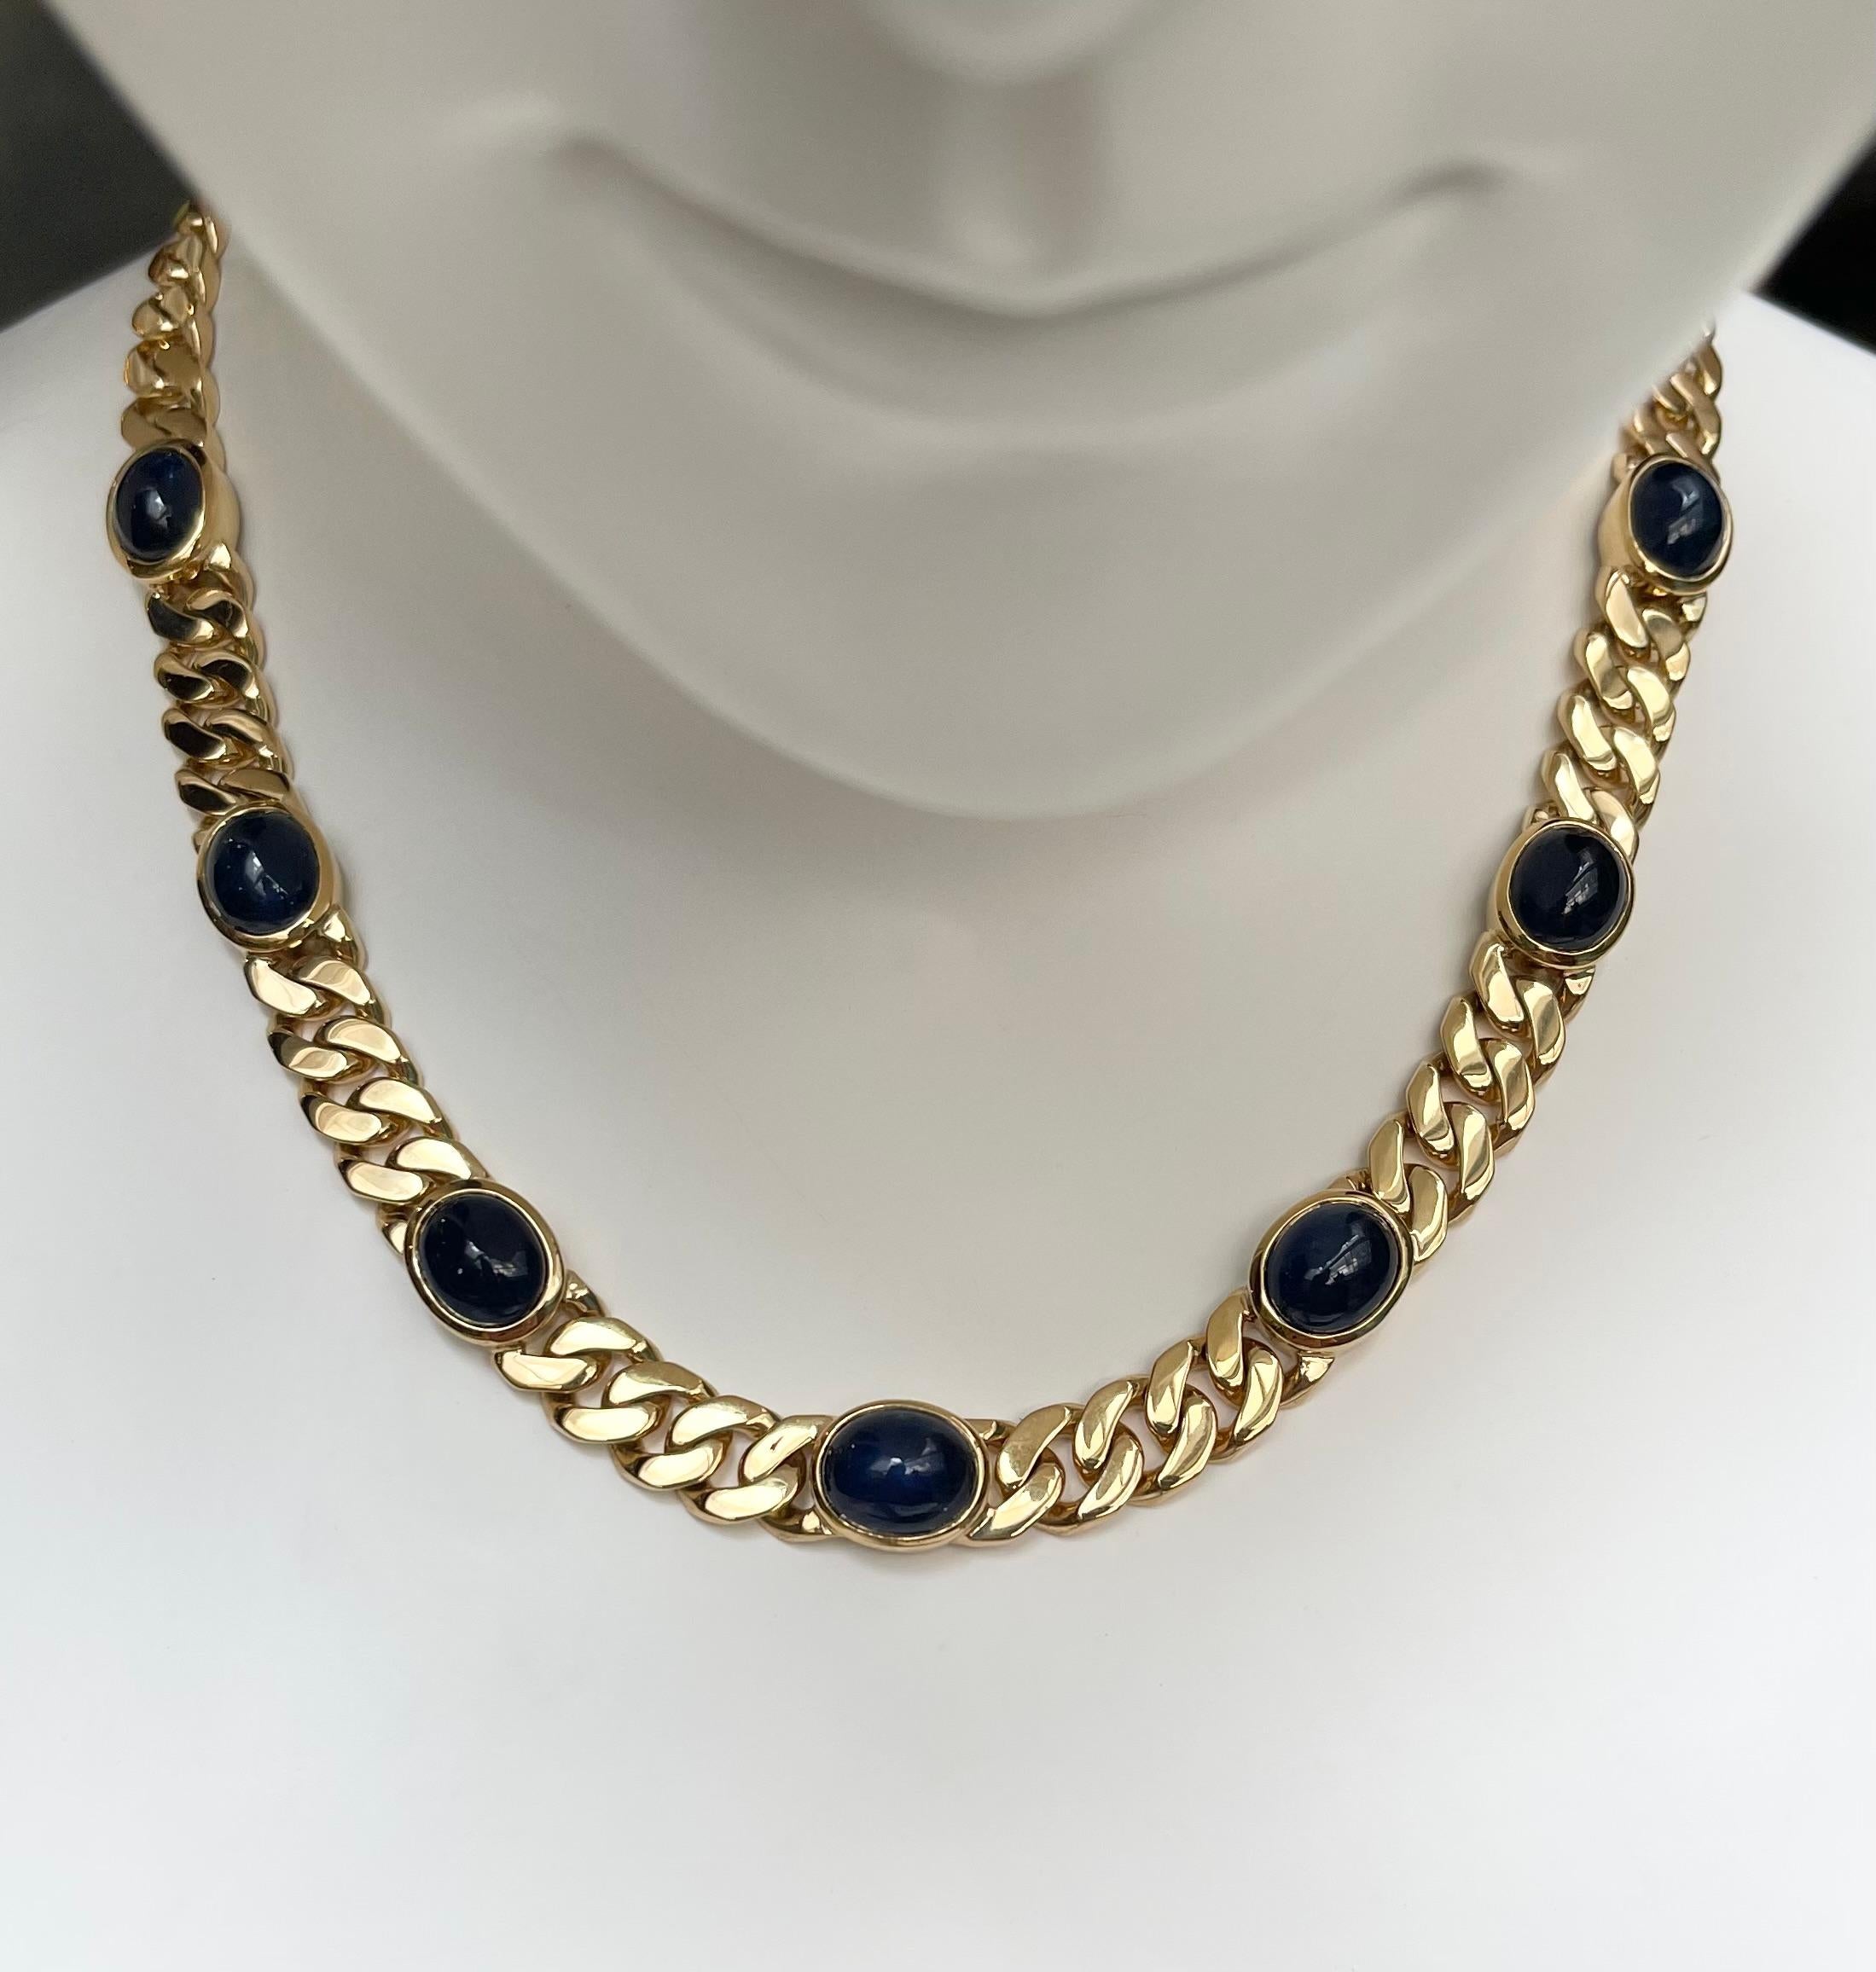 Cabochon Blauer Saphir 33,57 Karat Halskette in 18K Goldfassung

Breite: 1.1 cm 
Länge: 43 cm
Gesamtgewicht: 95,29 Gramm

